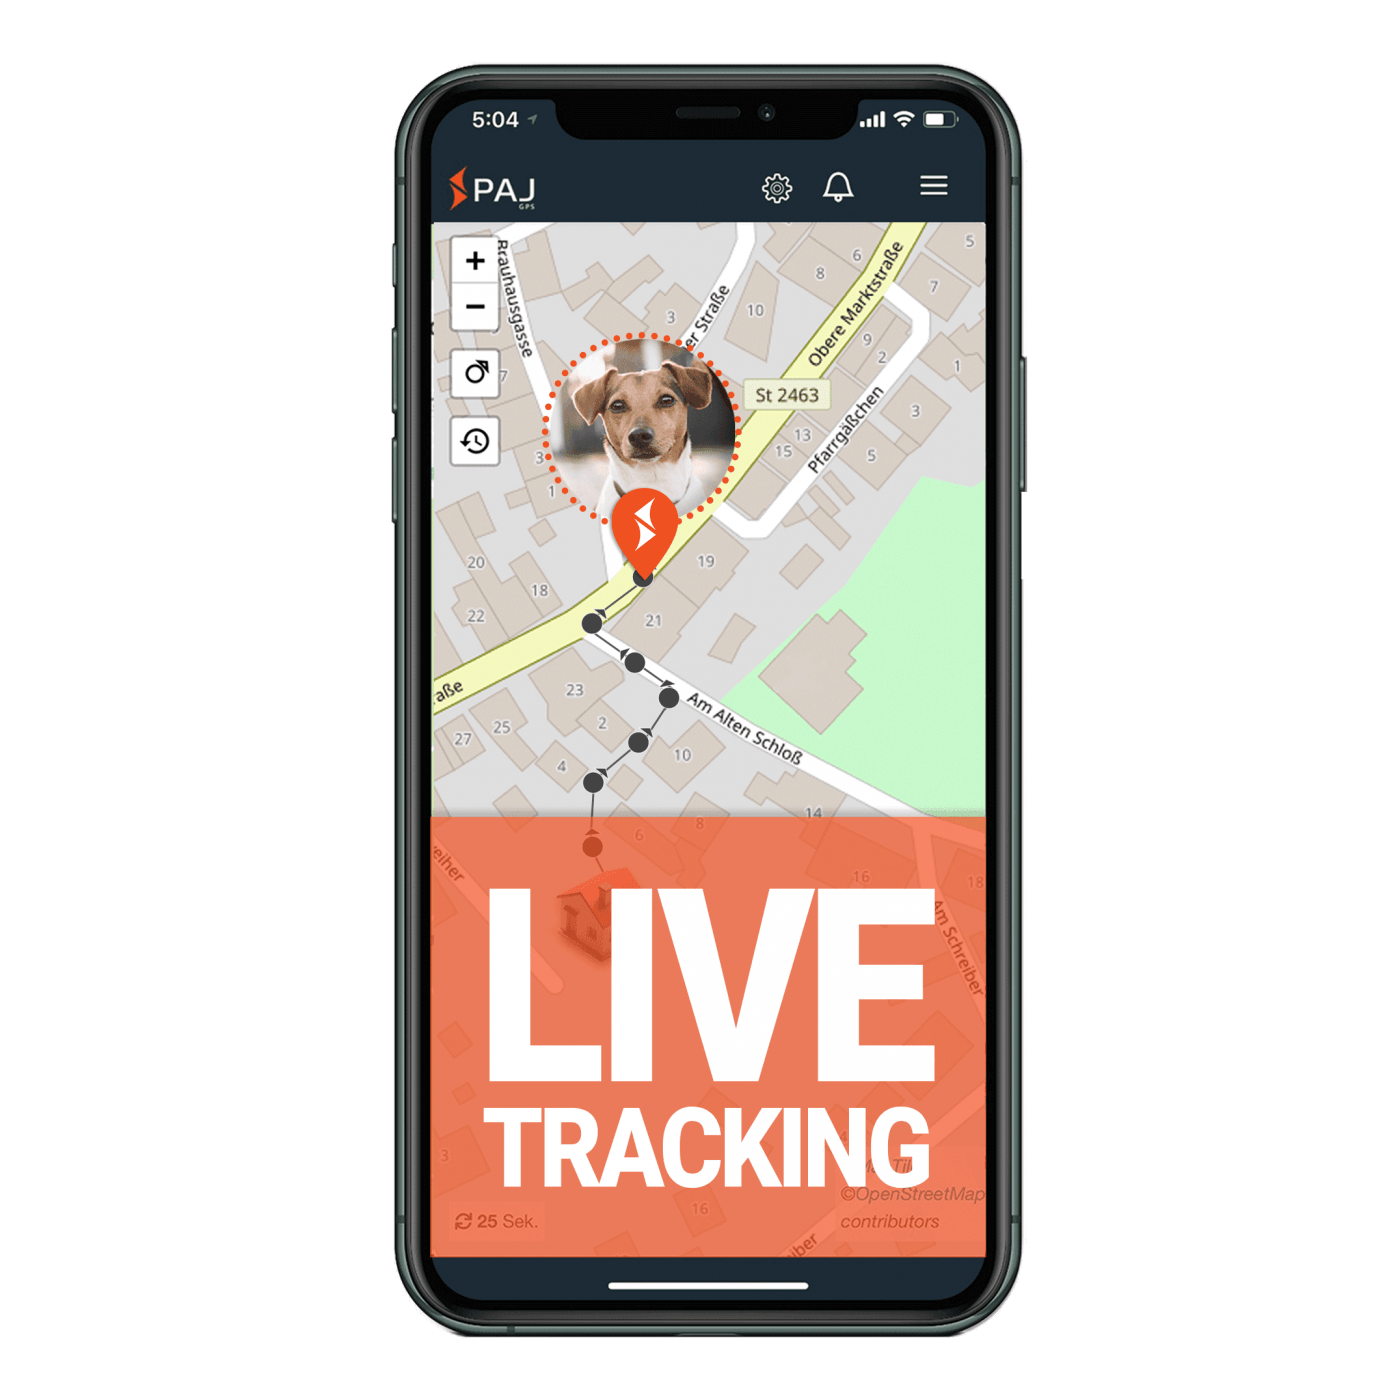 GPS Tracker Hund Welches ist das richtige GPS für Hunde? PAJ GPS